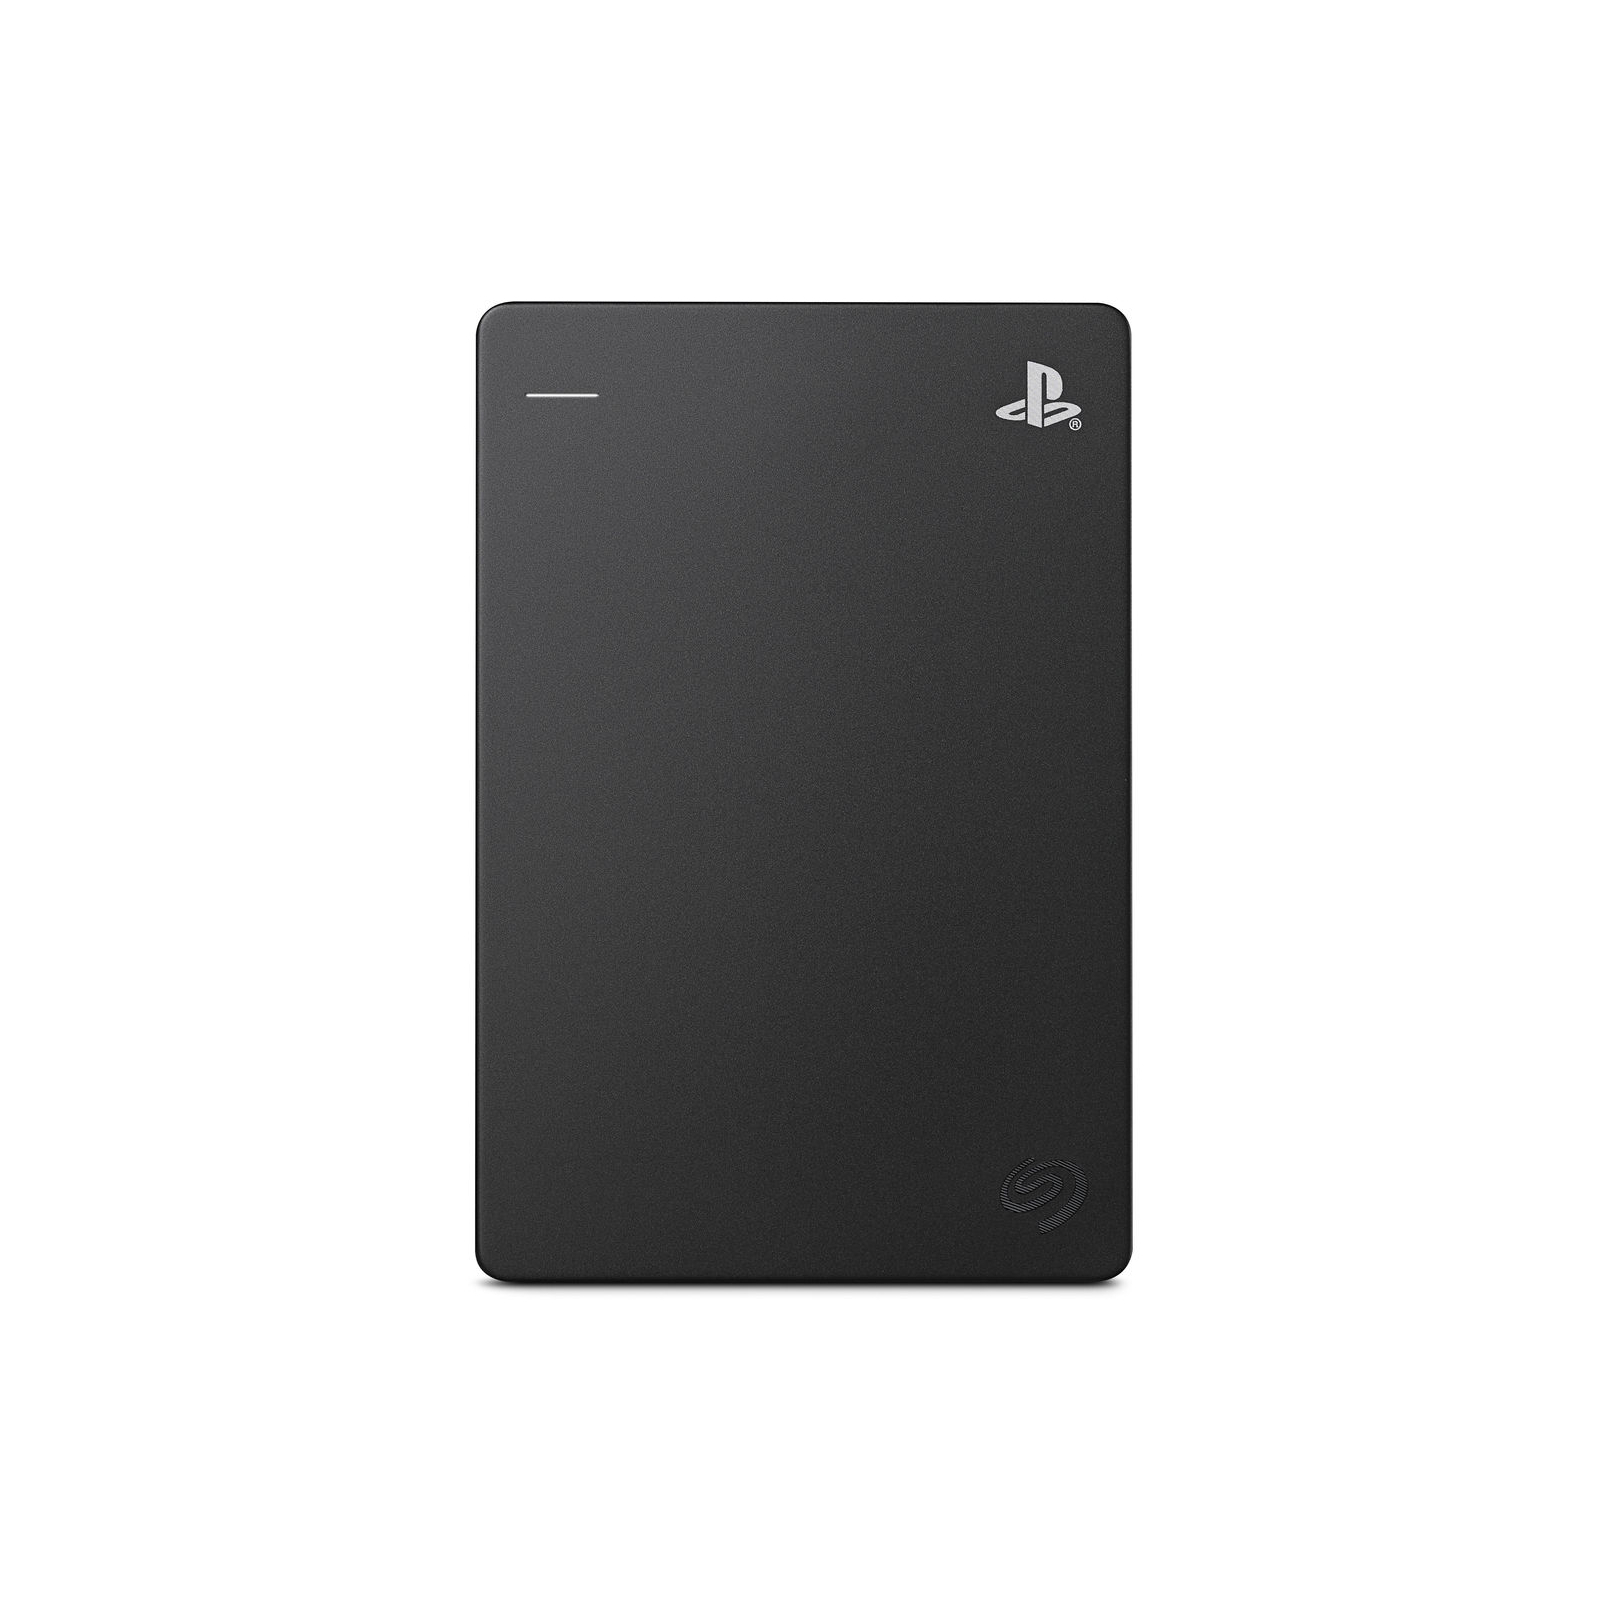 Зовнішній жорсткий диск 2.5" 2TB Game Drive for PlayStation Seagate (STGD2000400) зображення 2